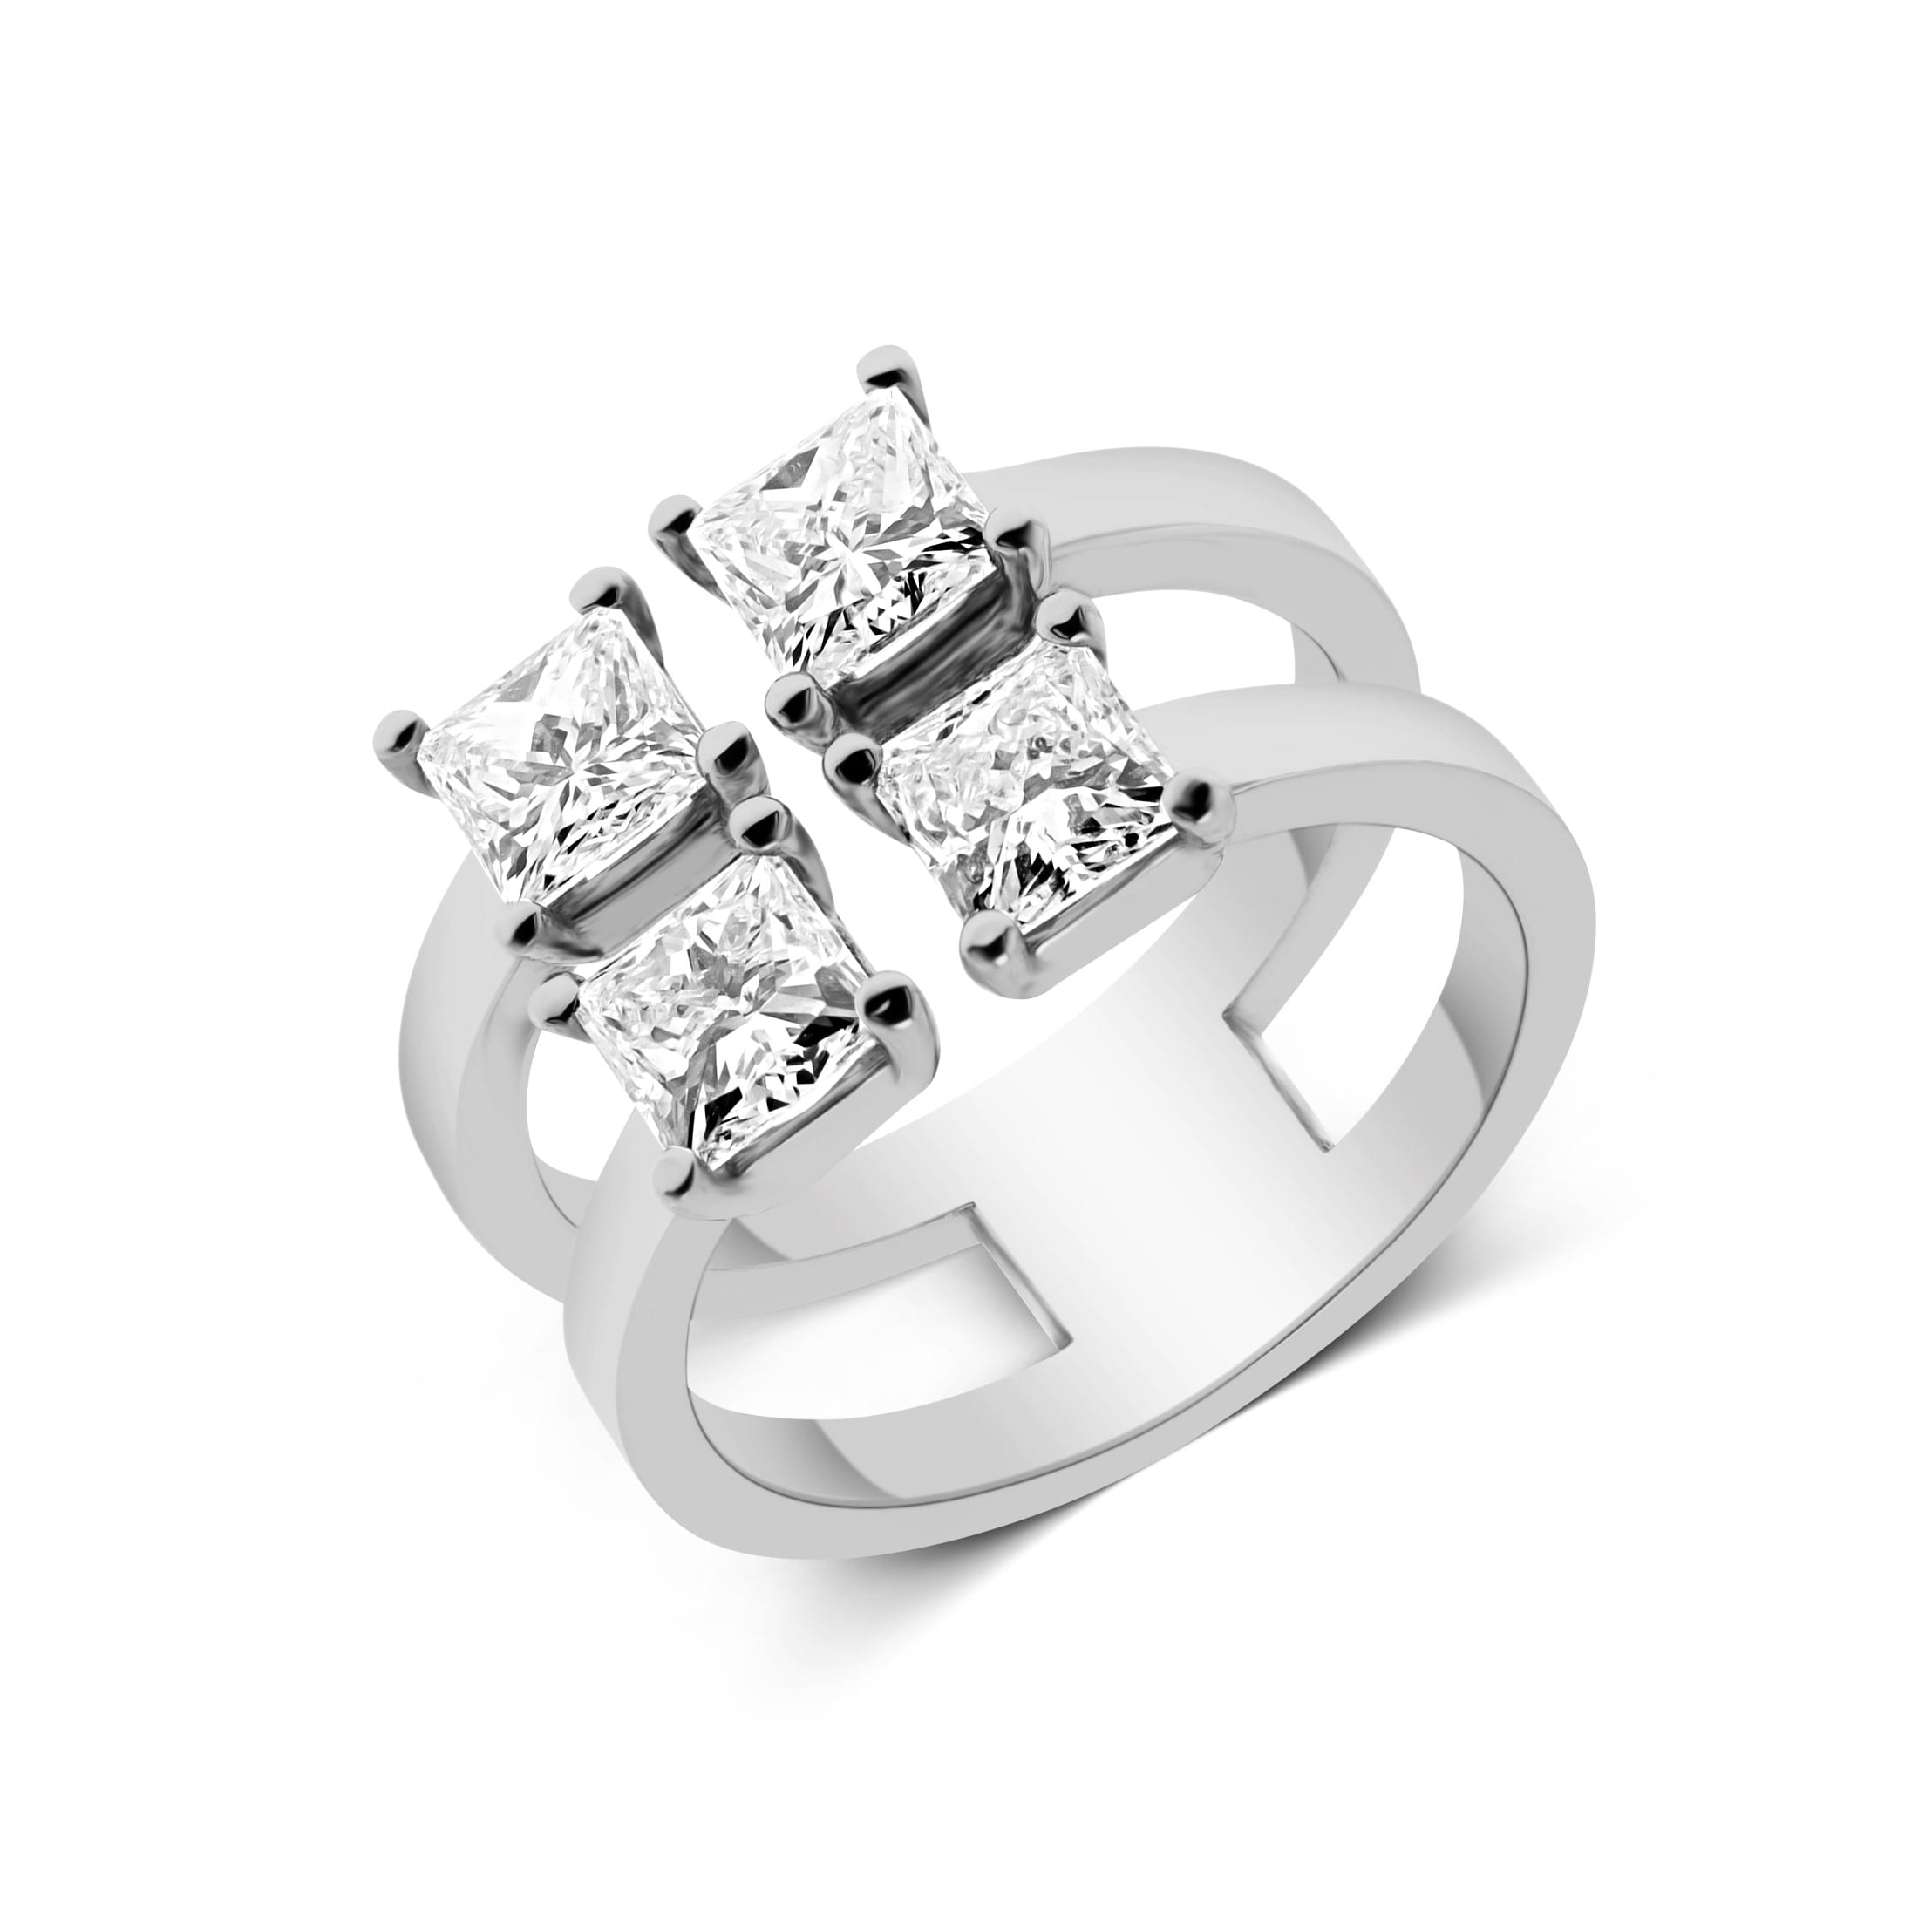 טבעת יהלומים דגם לינור אלגנטי בעיצוב להקה ייחודית עם ארבעה יהלומים בחיתוך מרובע המשובצים בשורה אנכית.